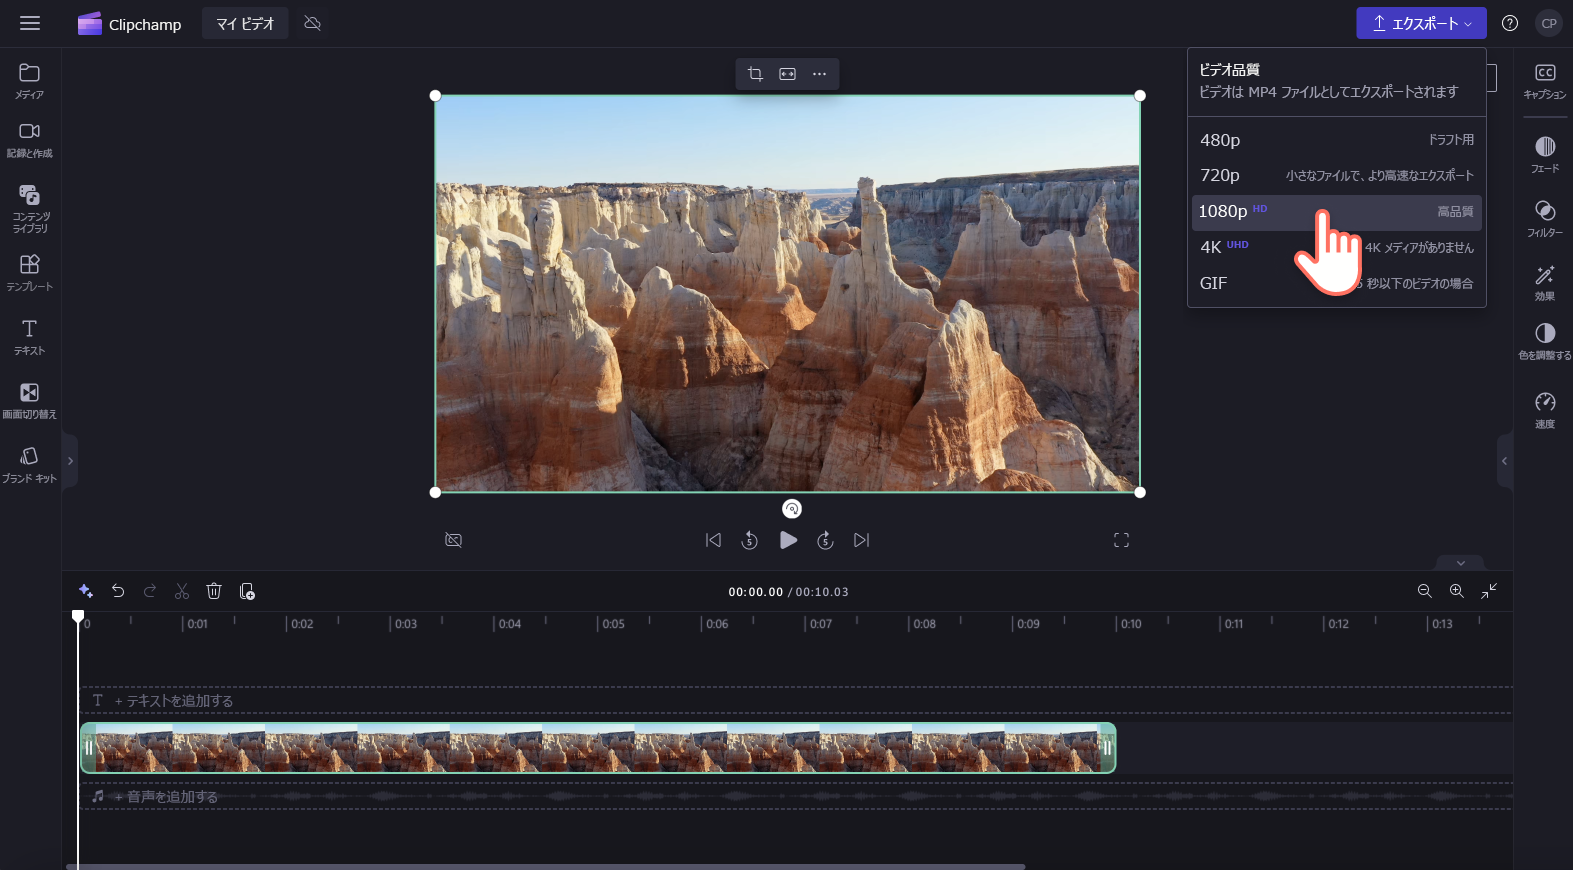 ユーザーがビデオ解像度を選択している画像。